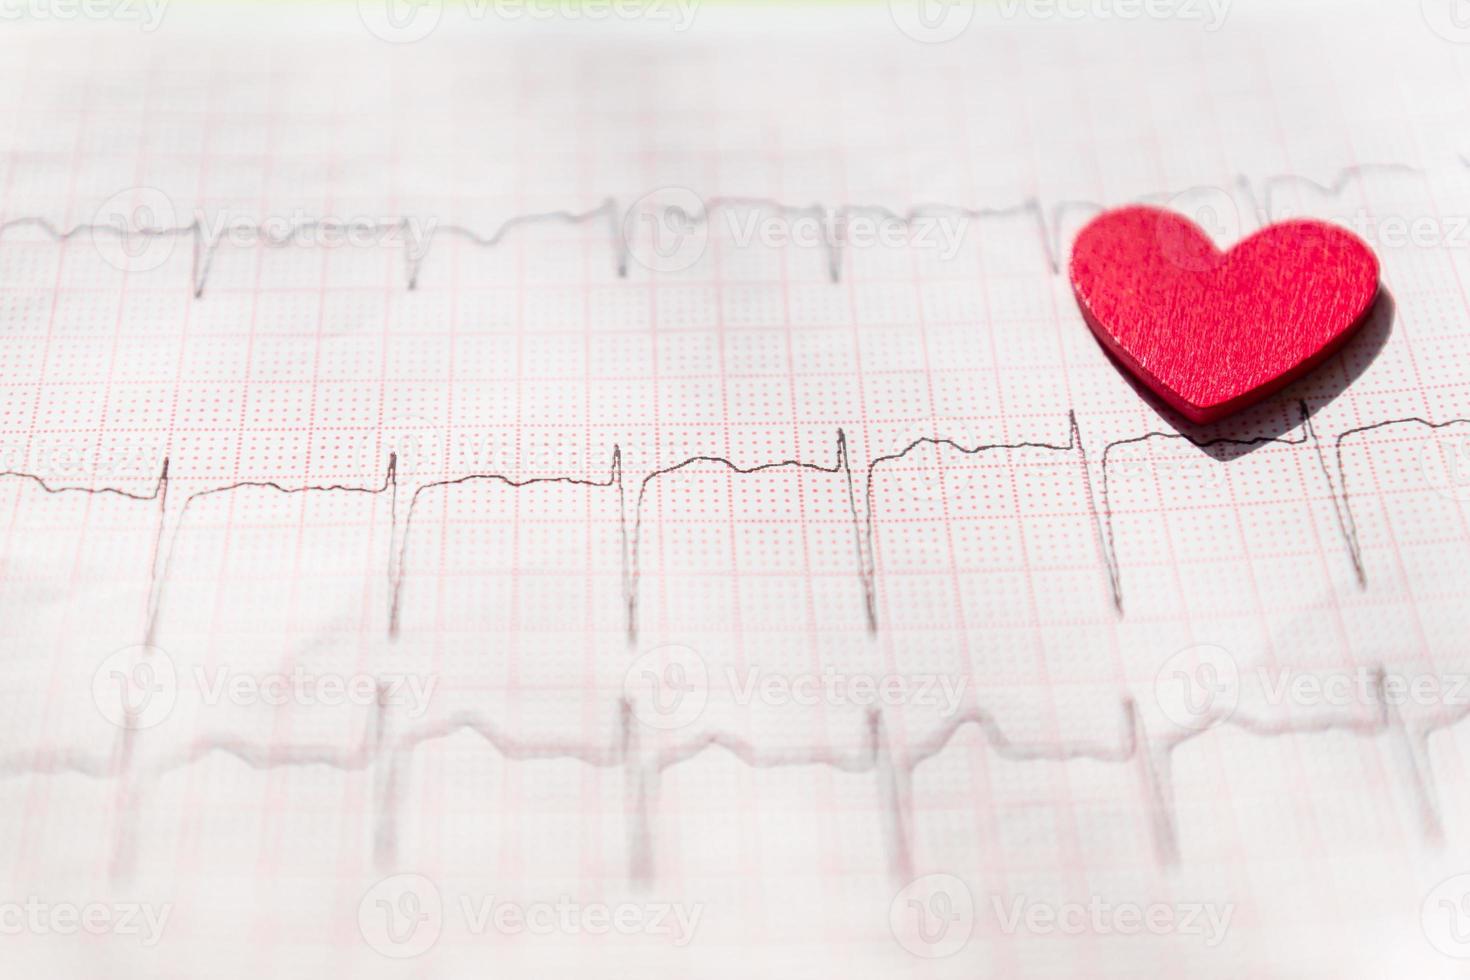 primer plano de un electrocardiograma en papel con corazón de madera roja. fondo de papel ecg o ekg. concepto médico y sanitario. foto